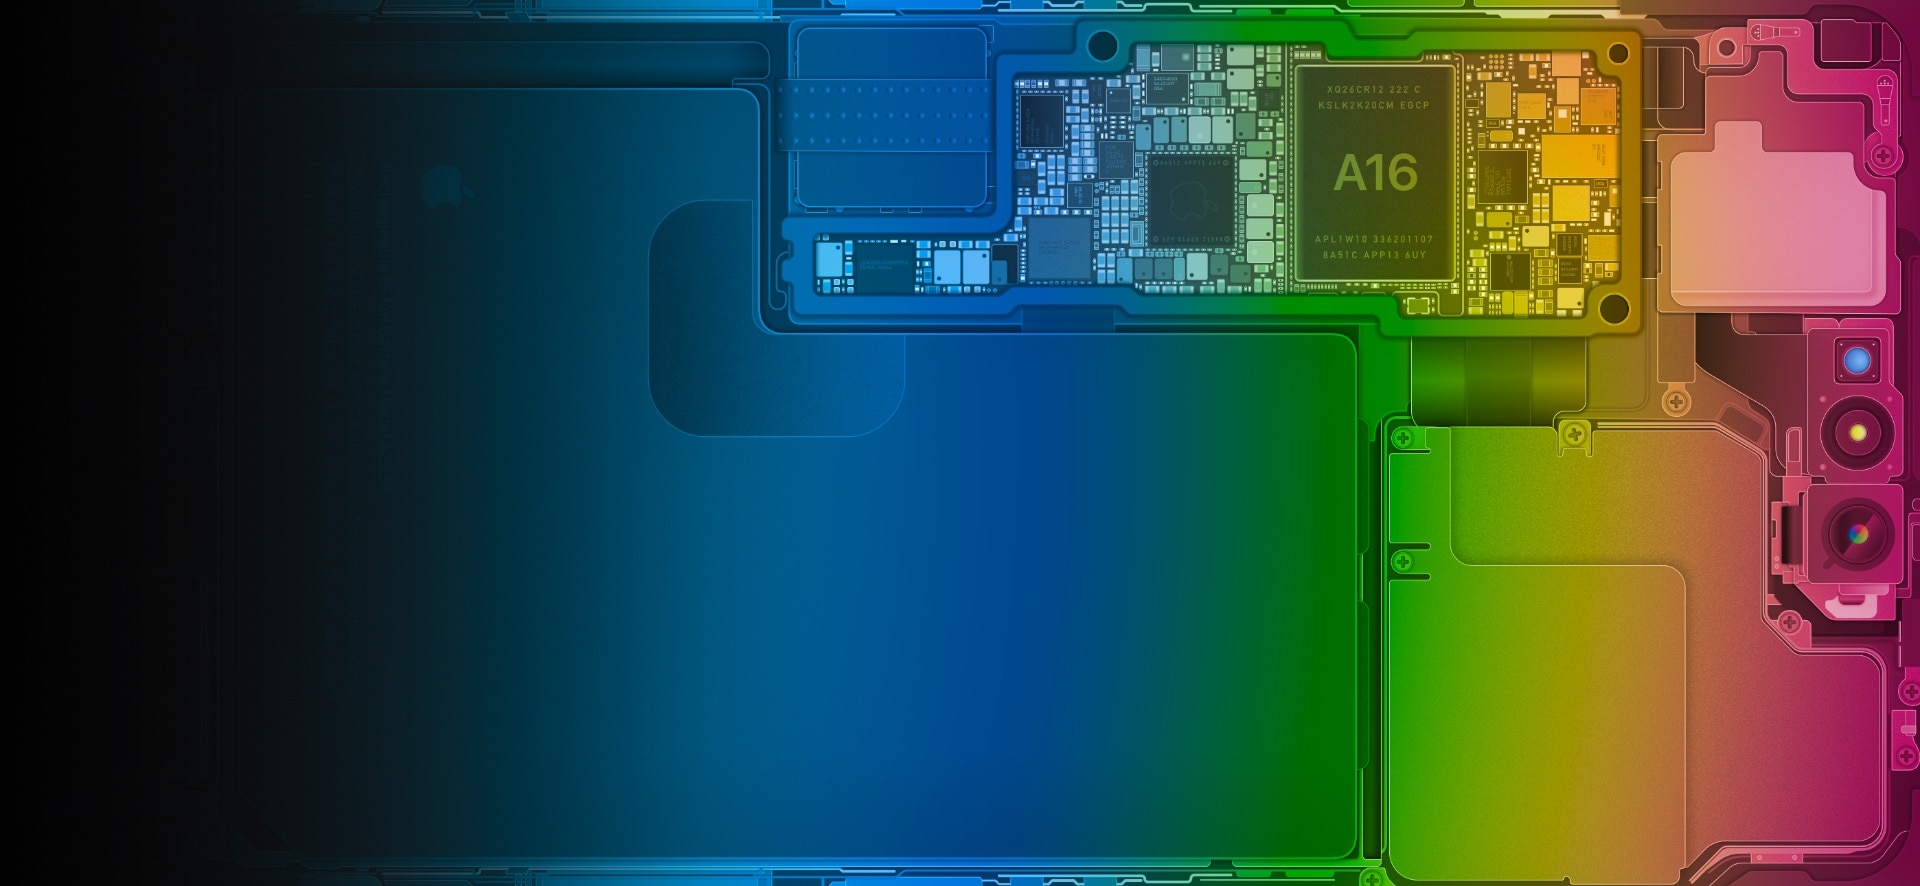 Download kleurrijke schets iPhone-achtergronden ter ere van WWDC23